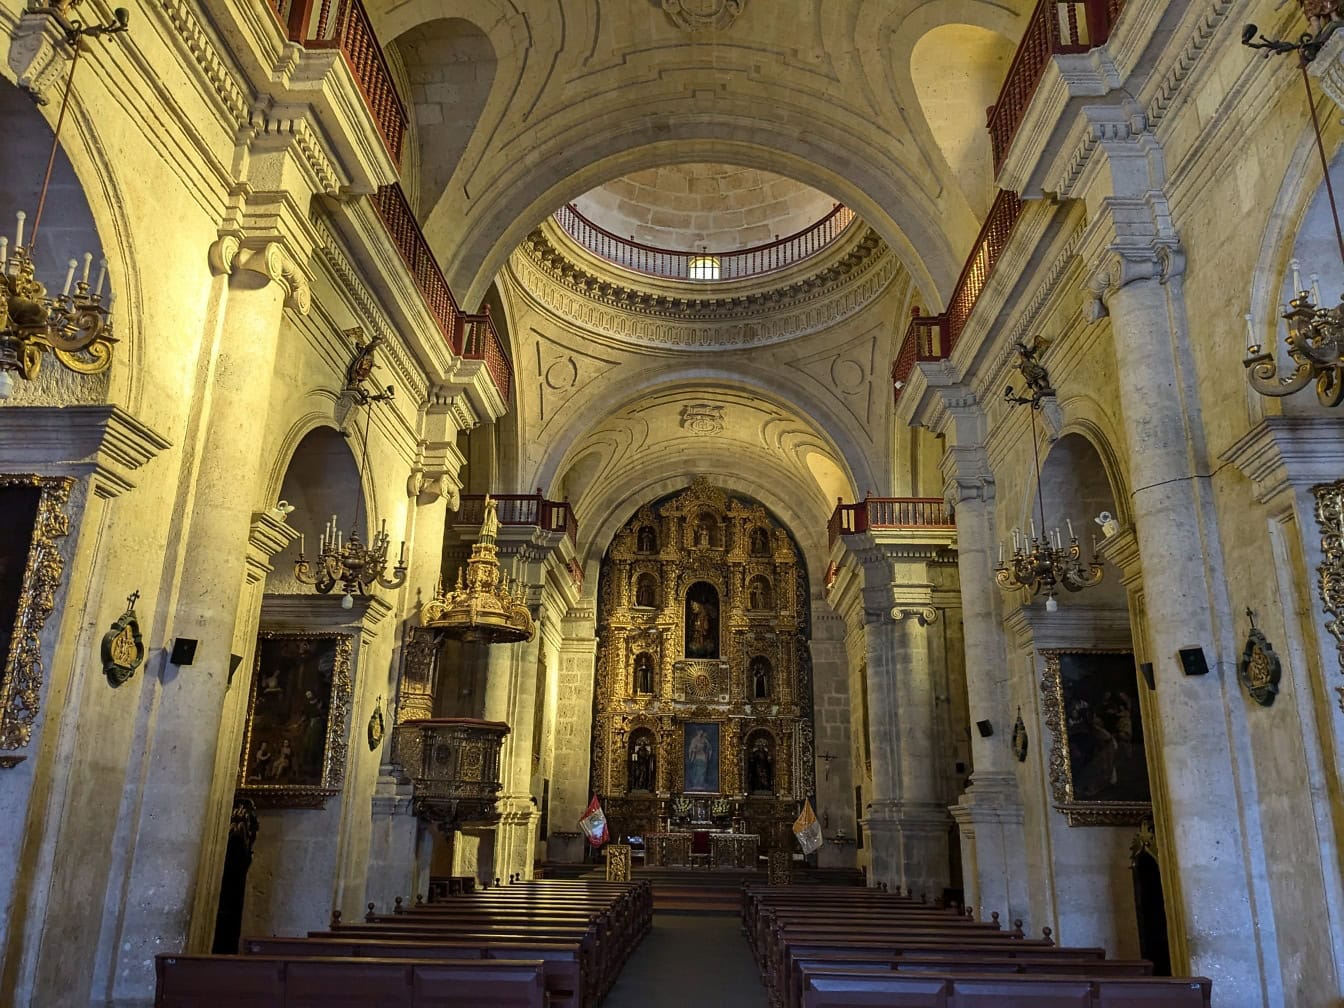 Um interior em estilo barroco da igreja católica da Companhia de Jesus de Arequipa, no Peru, com um altar ornamentado